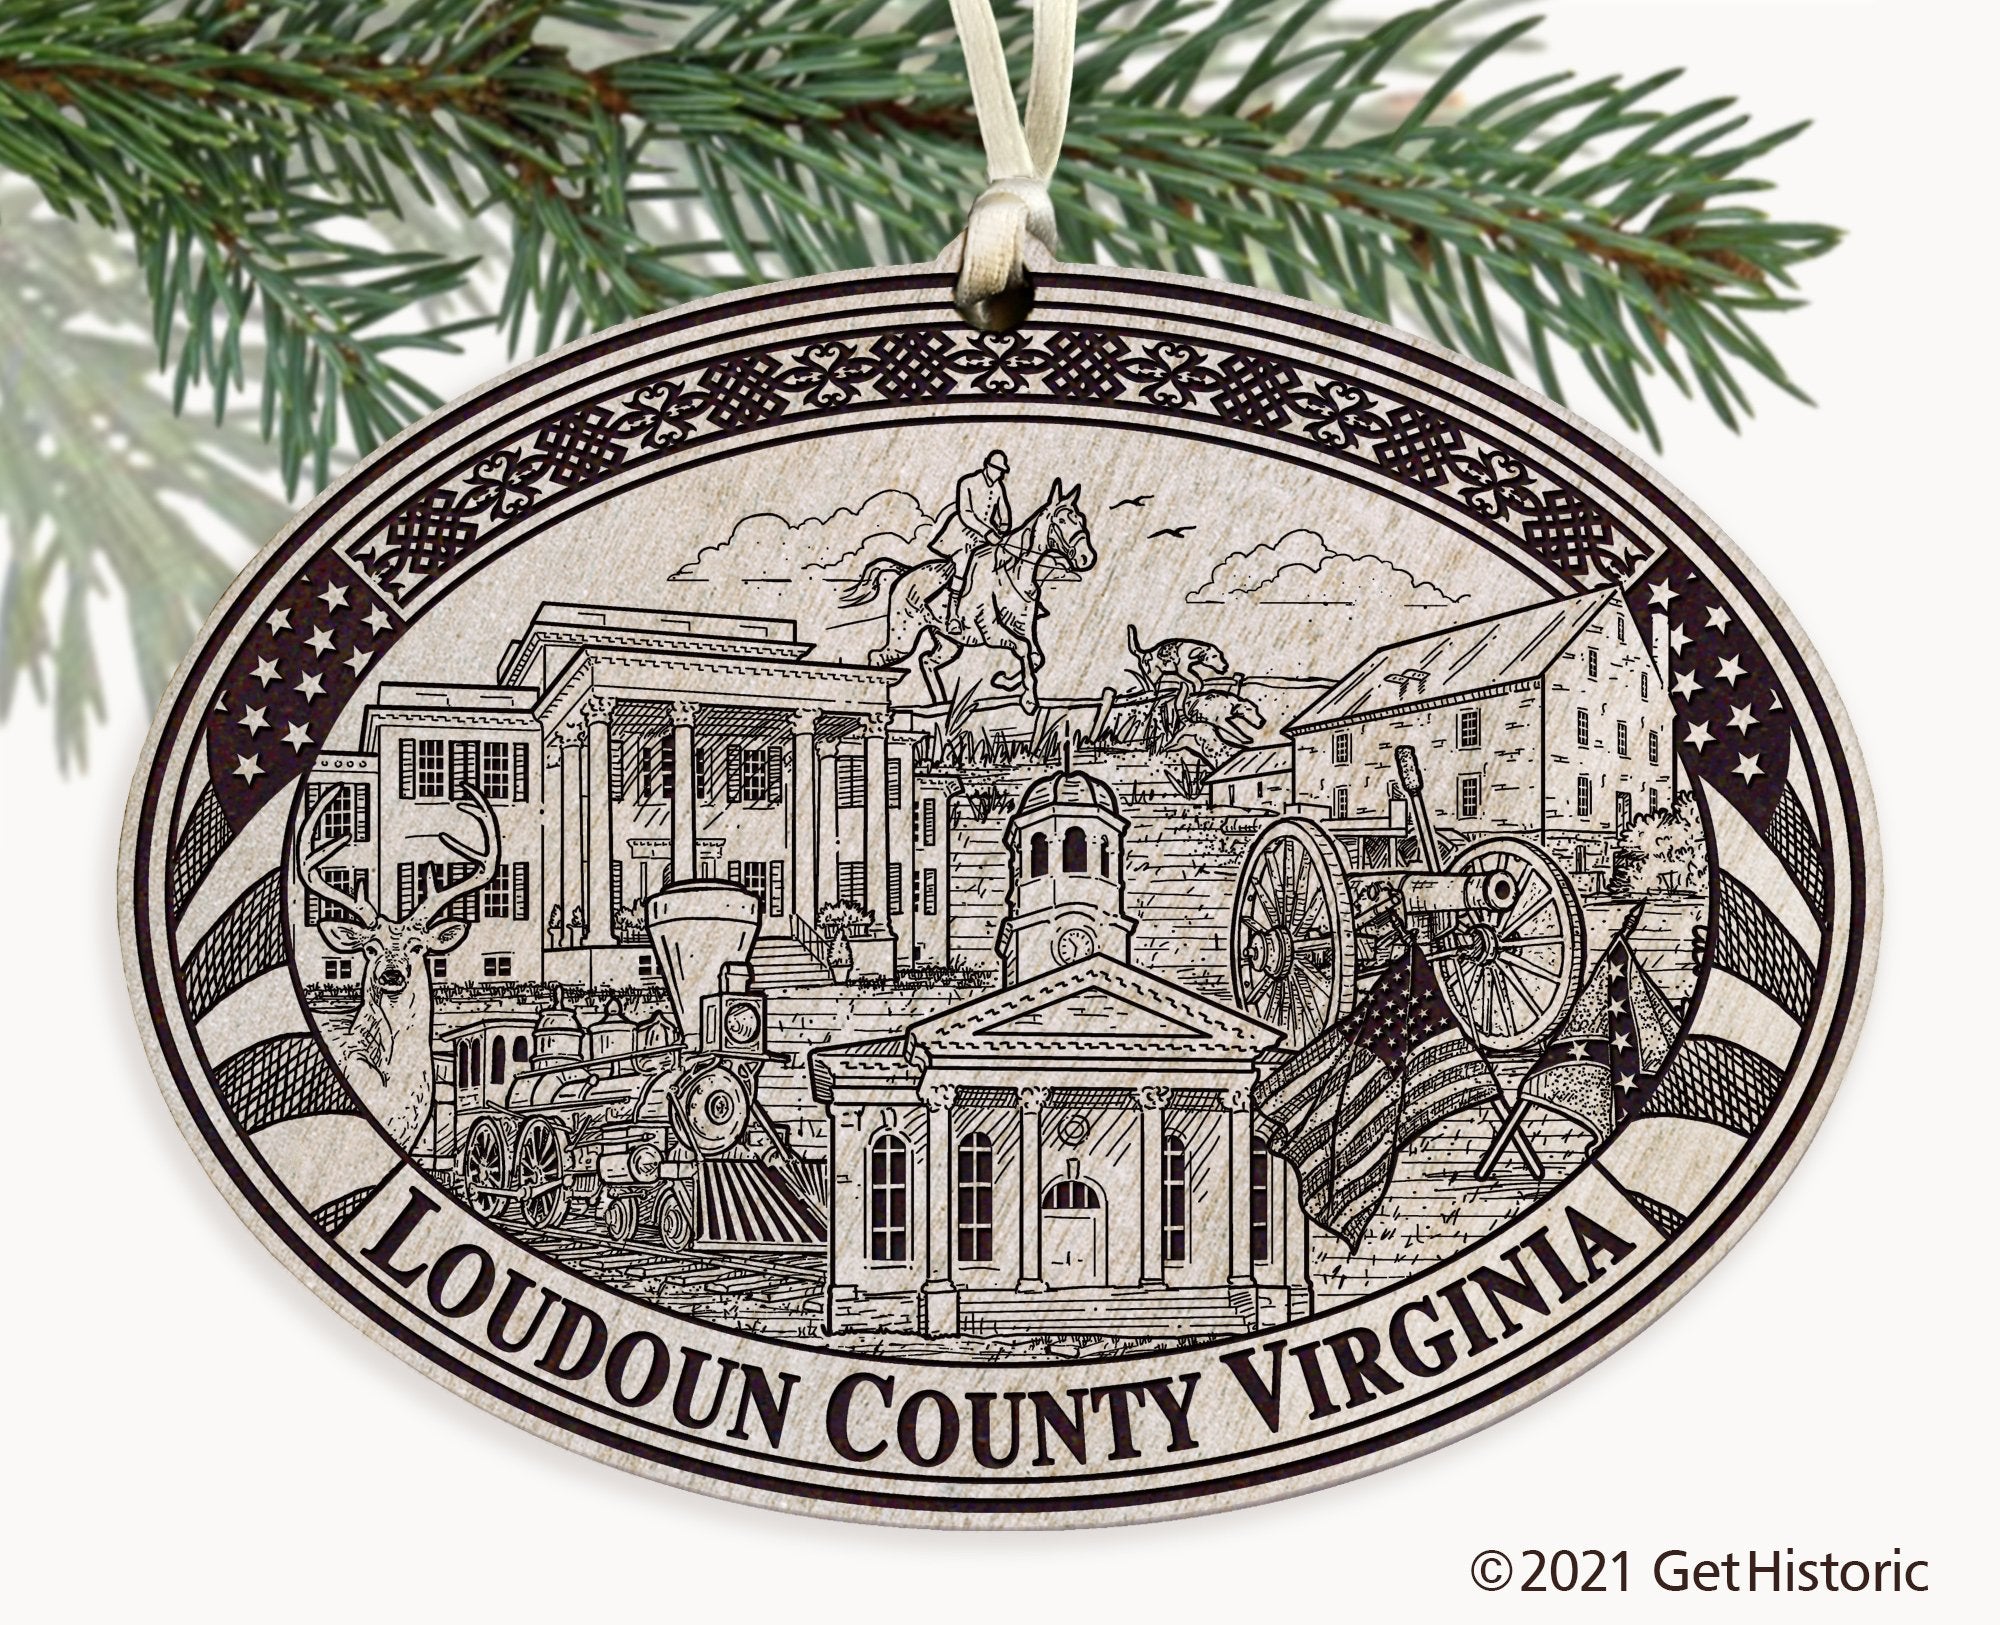 Loudoun County Virginia Engraved Ornament